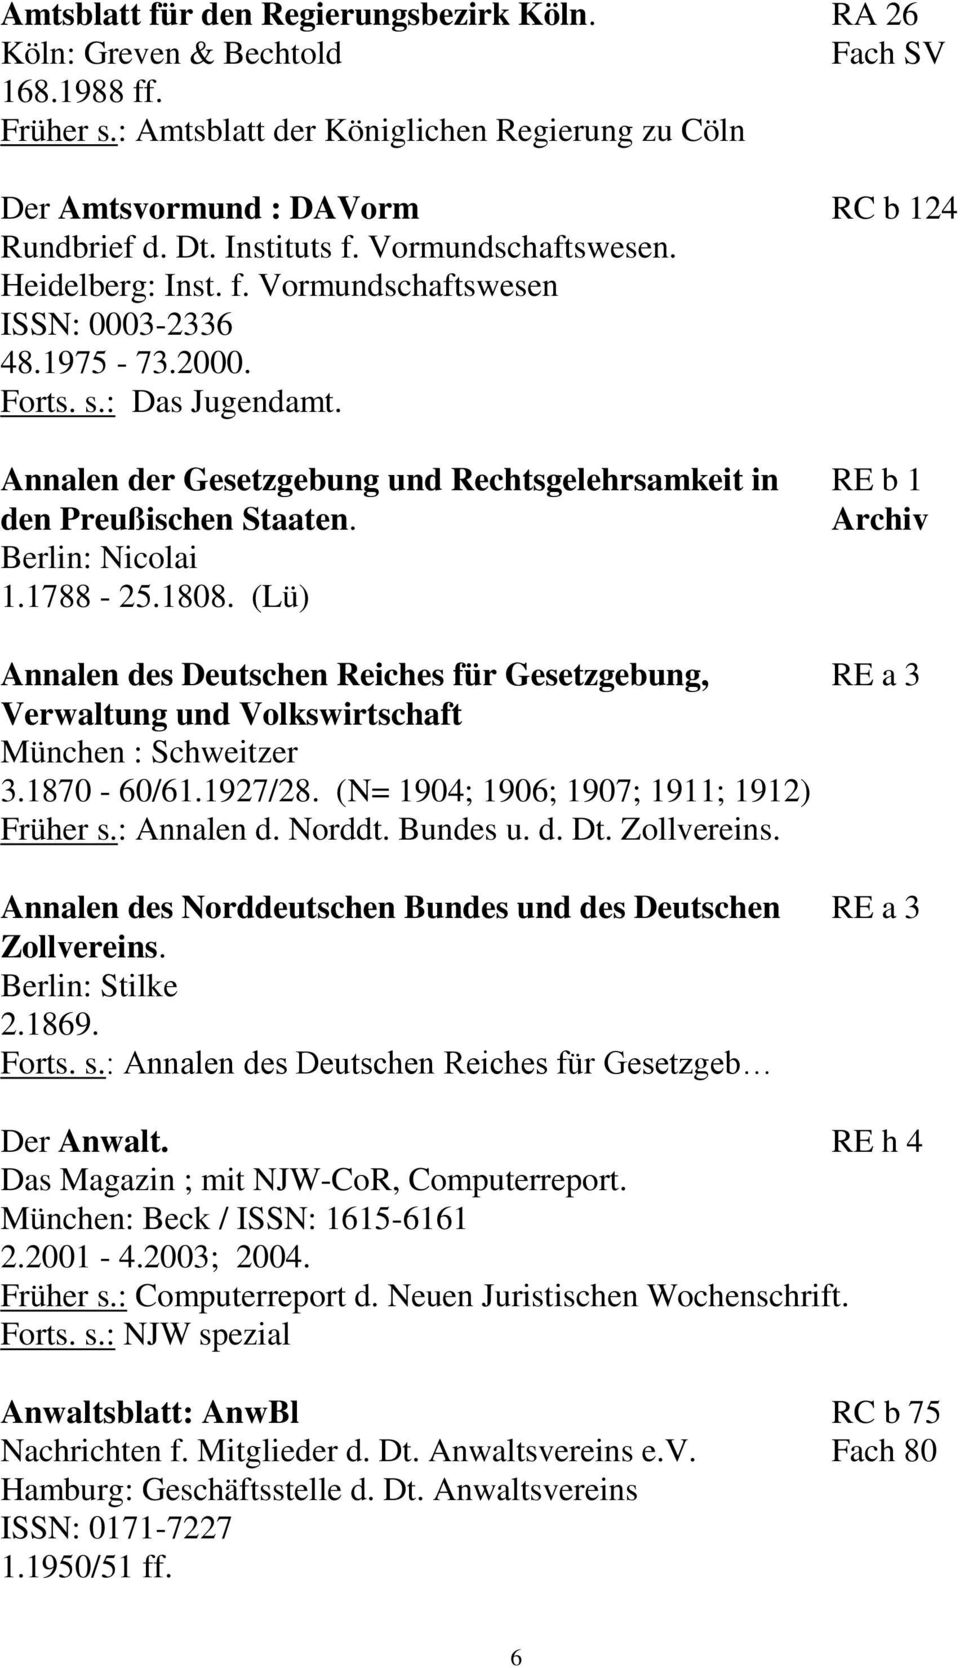 Annalen der Gesetzgebung und Rechtsgelehrsamkeit in RE b 1 den Preußischen Staaten. Archiv Berlin: Nicolai 1.1788-25.1808.